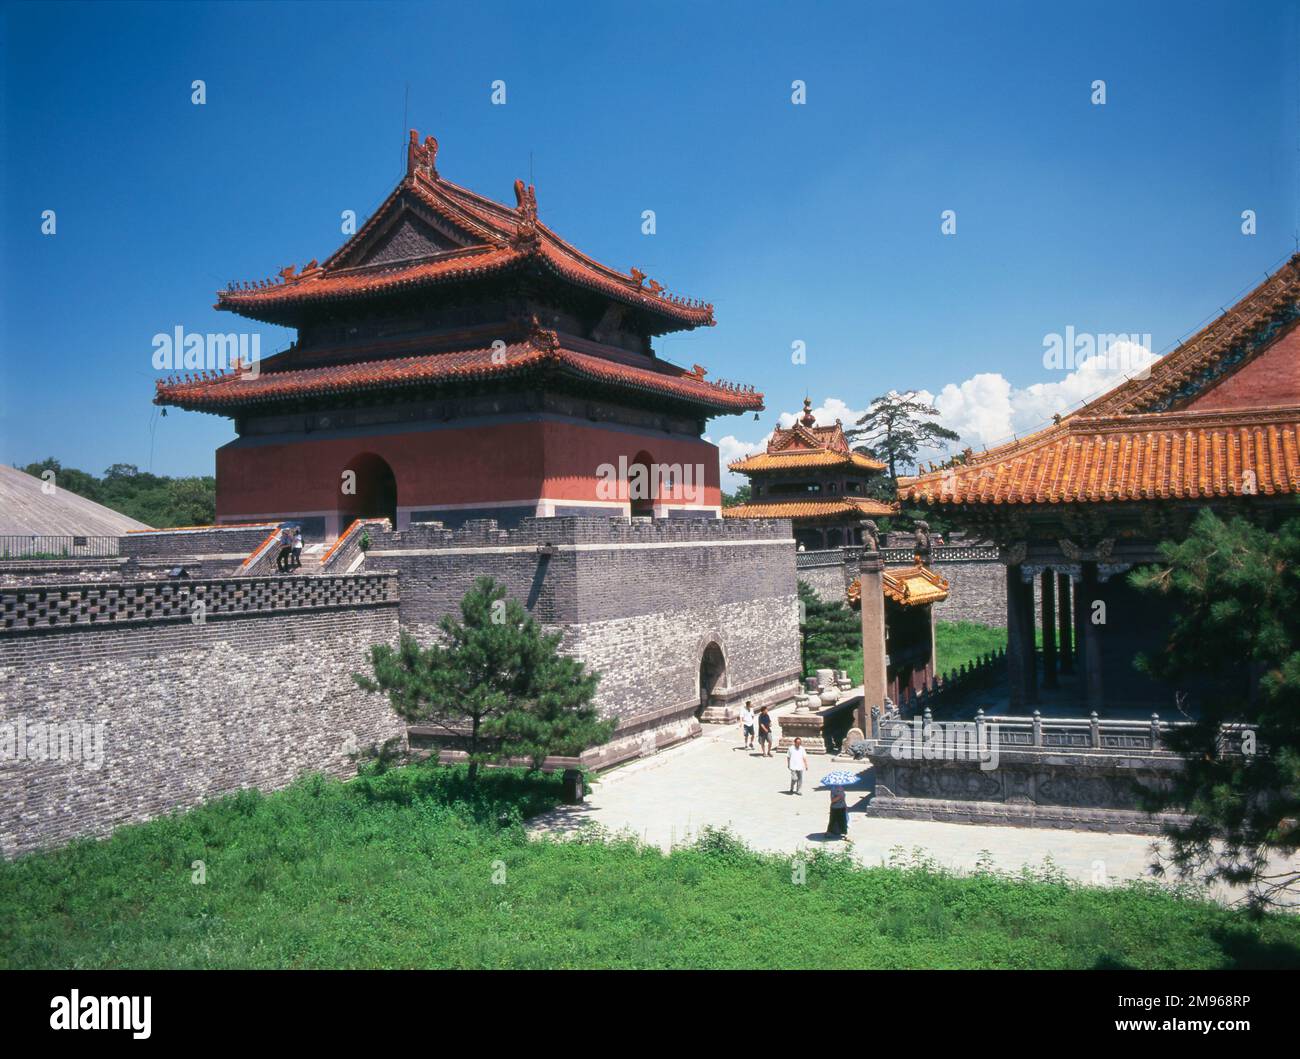 Blick auf das Zhaoling-Grab in Shenyang, Provinz Liaoning, China. Es ist das Mausoleum von Huang Taiji (Kaiser Taizong) der Qing-Dynastie und seiner Königin. Der Bau begann 1643 und dauerte acht Jahre. Stockfoto